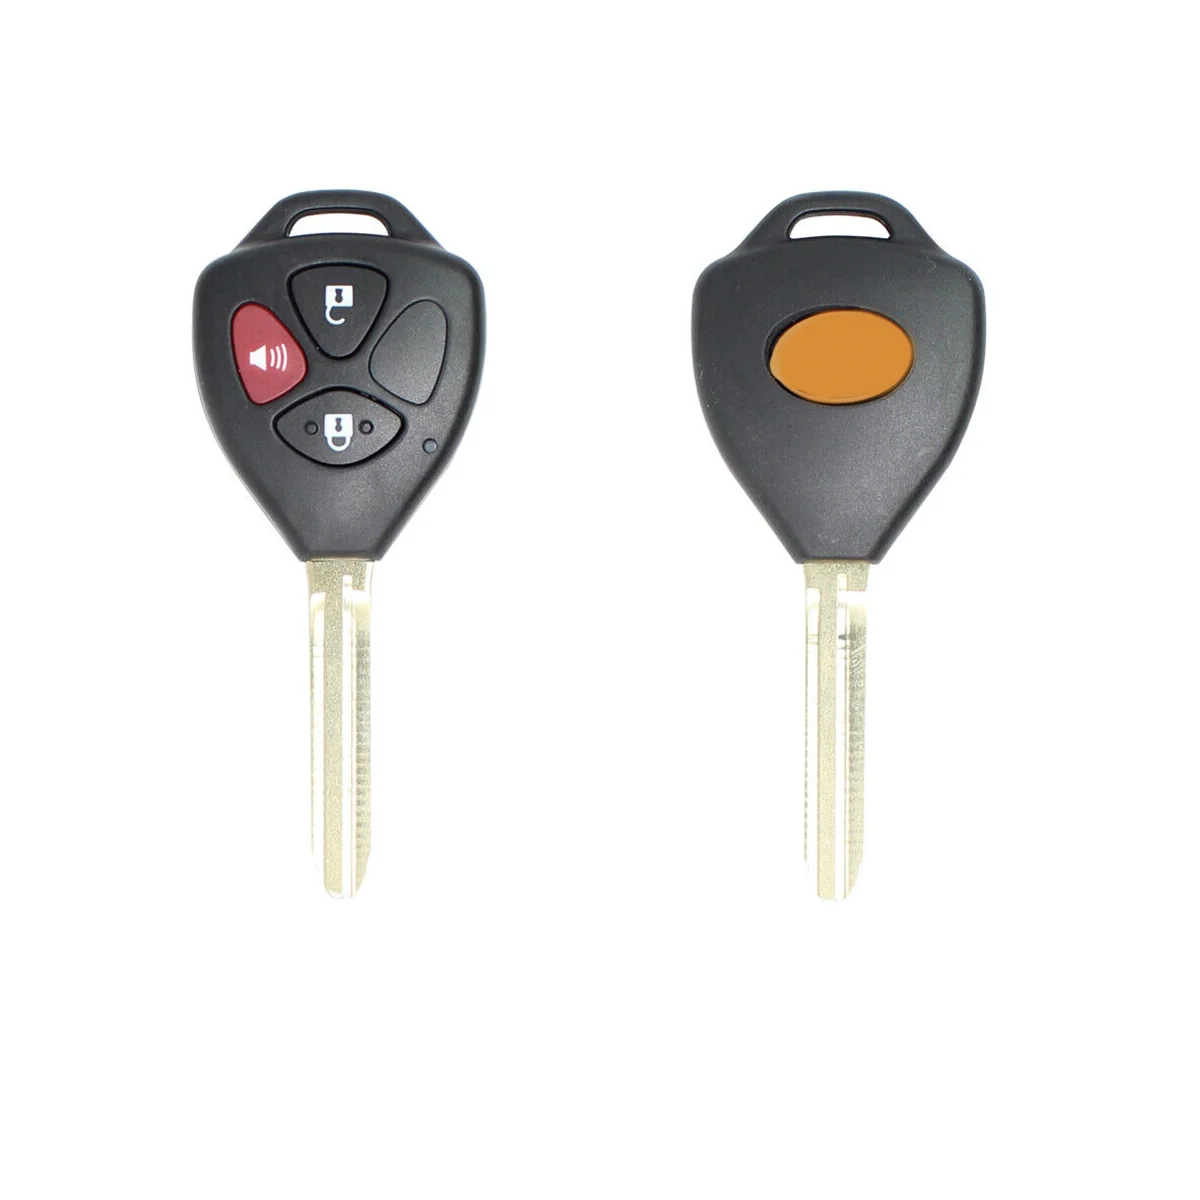 Xhorse XKTO04EN Универсальный проводной дистанционный брелок с 3 кнопками для Toyota Style для VVDI Key Tool 5 шт./лот0